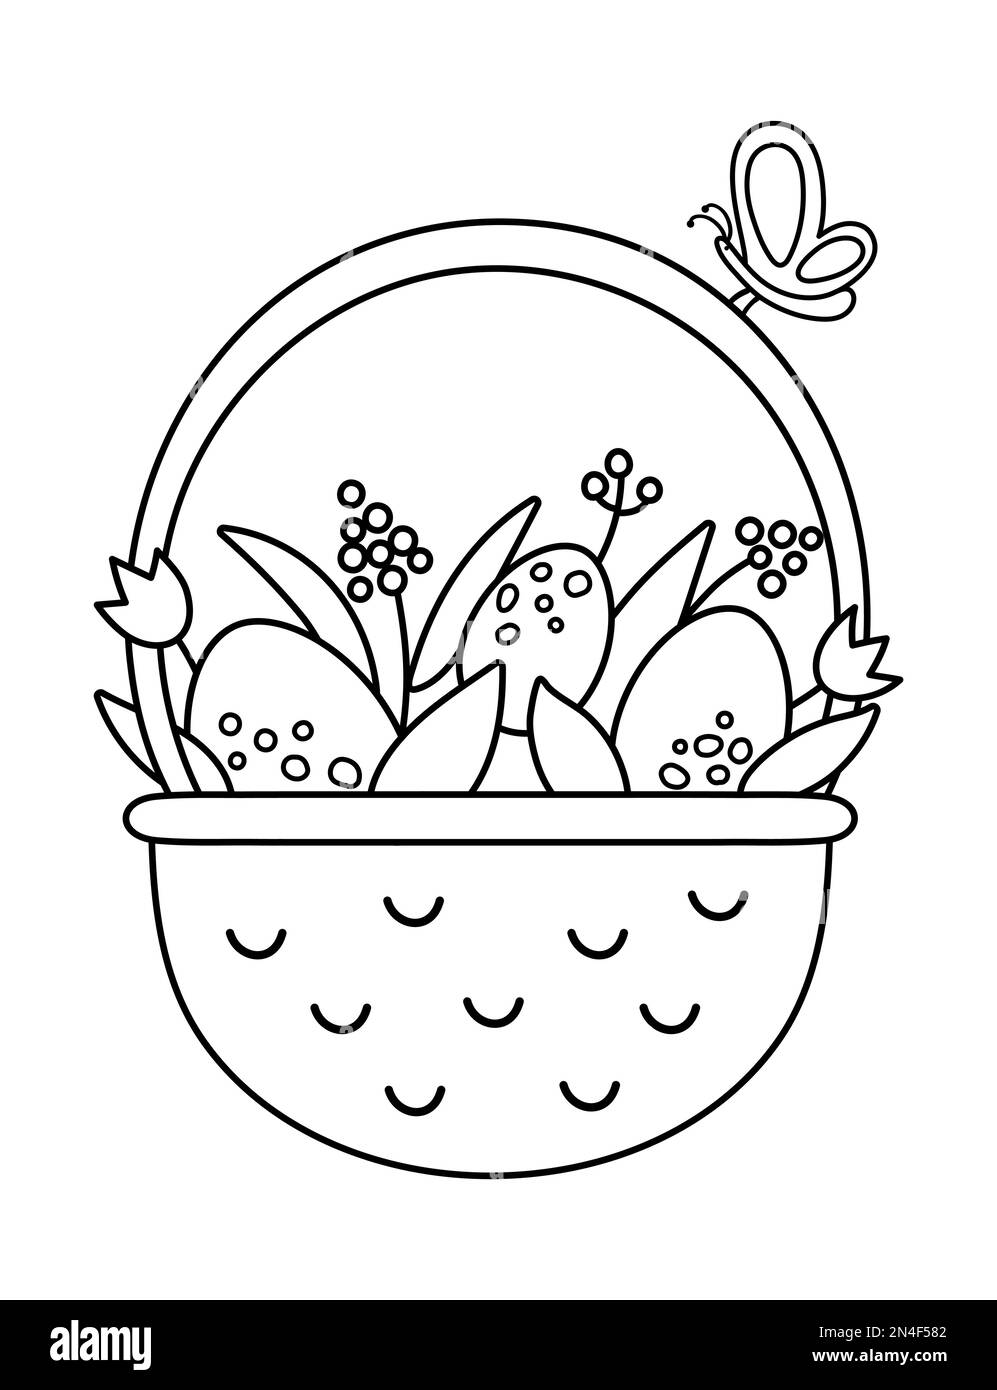 Schwarz-weißer Vektor-Korb mit Eiern, Blumen und Schmetterlingssymbol. Osterumriss traditionelles Symbol und Designelement isoliert auf Weiß. Süßer Spri Stock Vektor